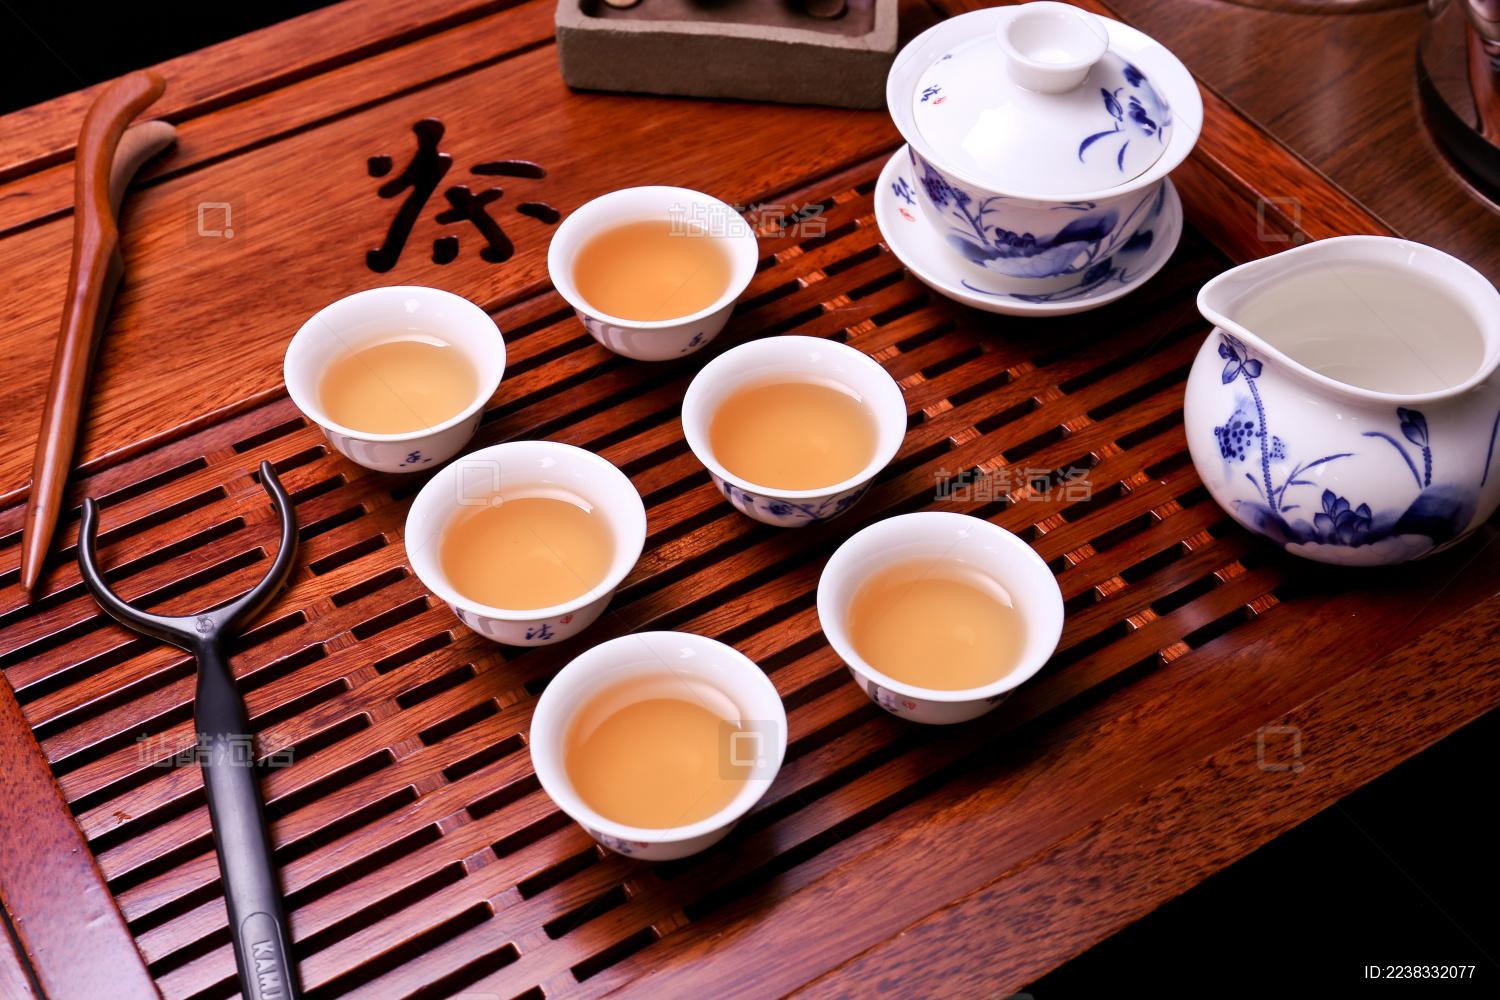 2023年功夫茶具推荐与选购攻略 | 茶盘、铁壶、茶具配件选购篇 - 知乎